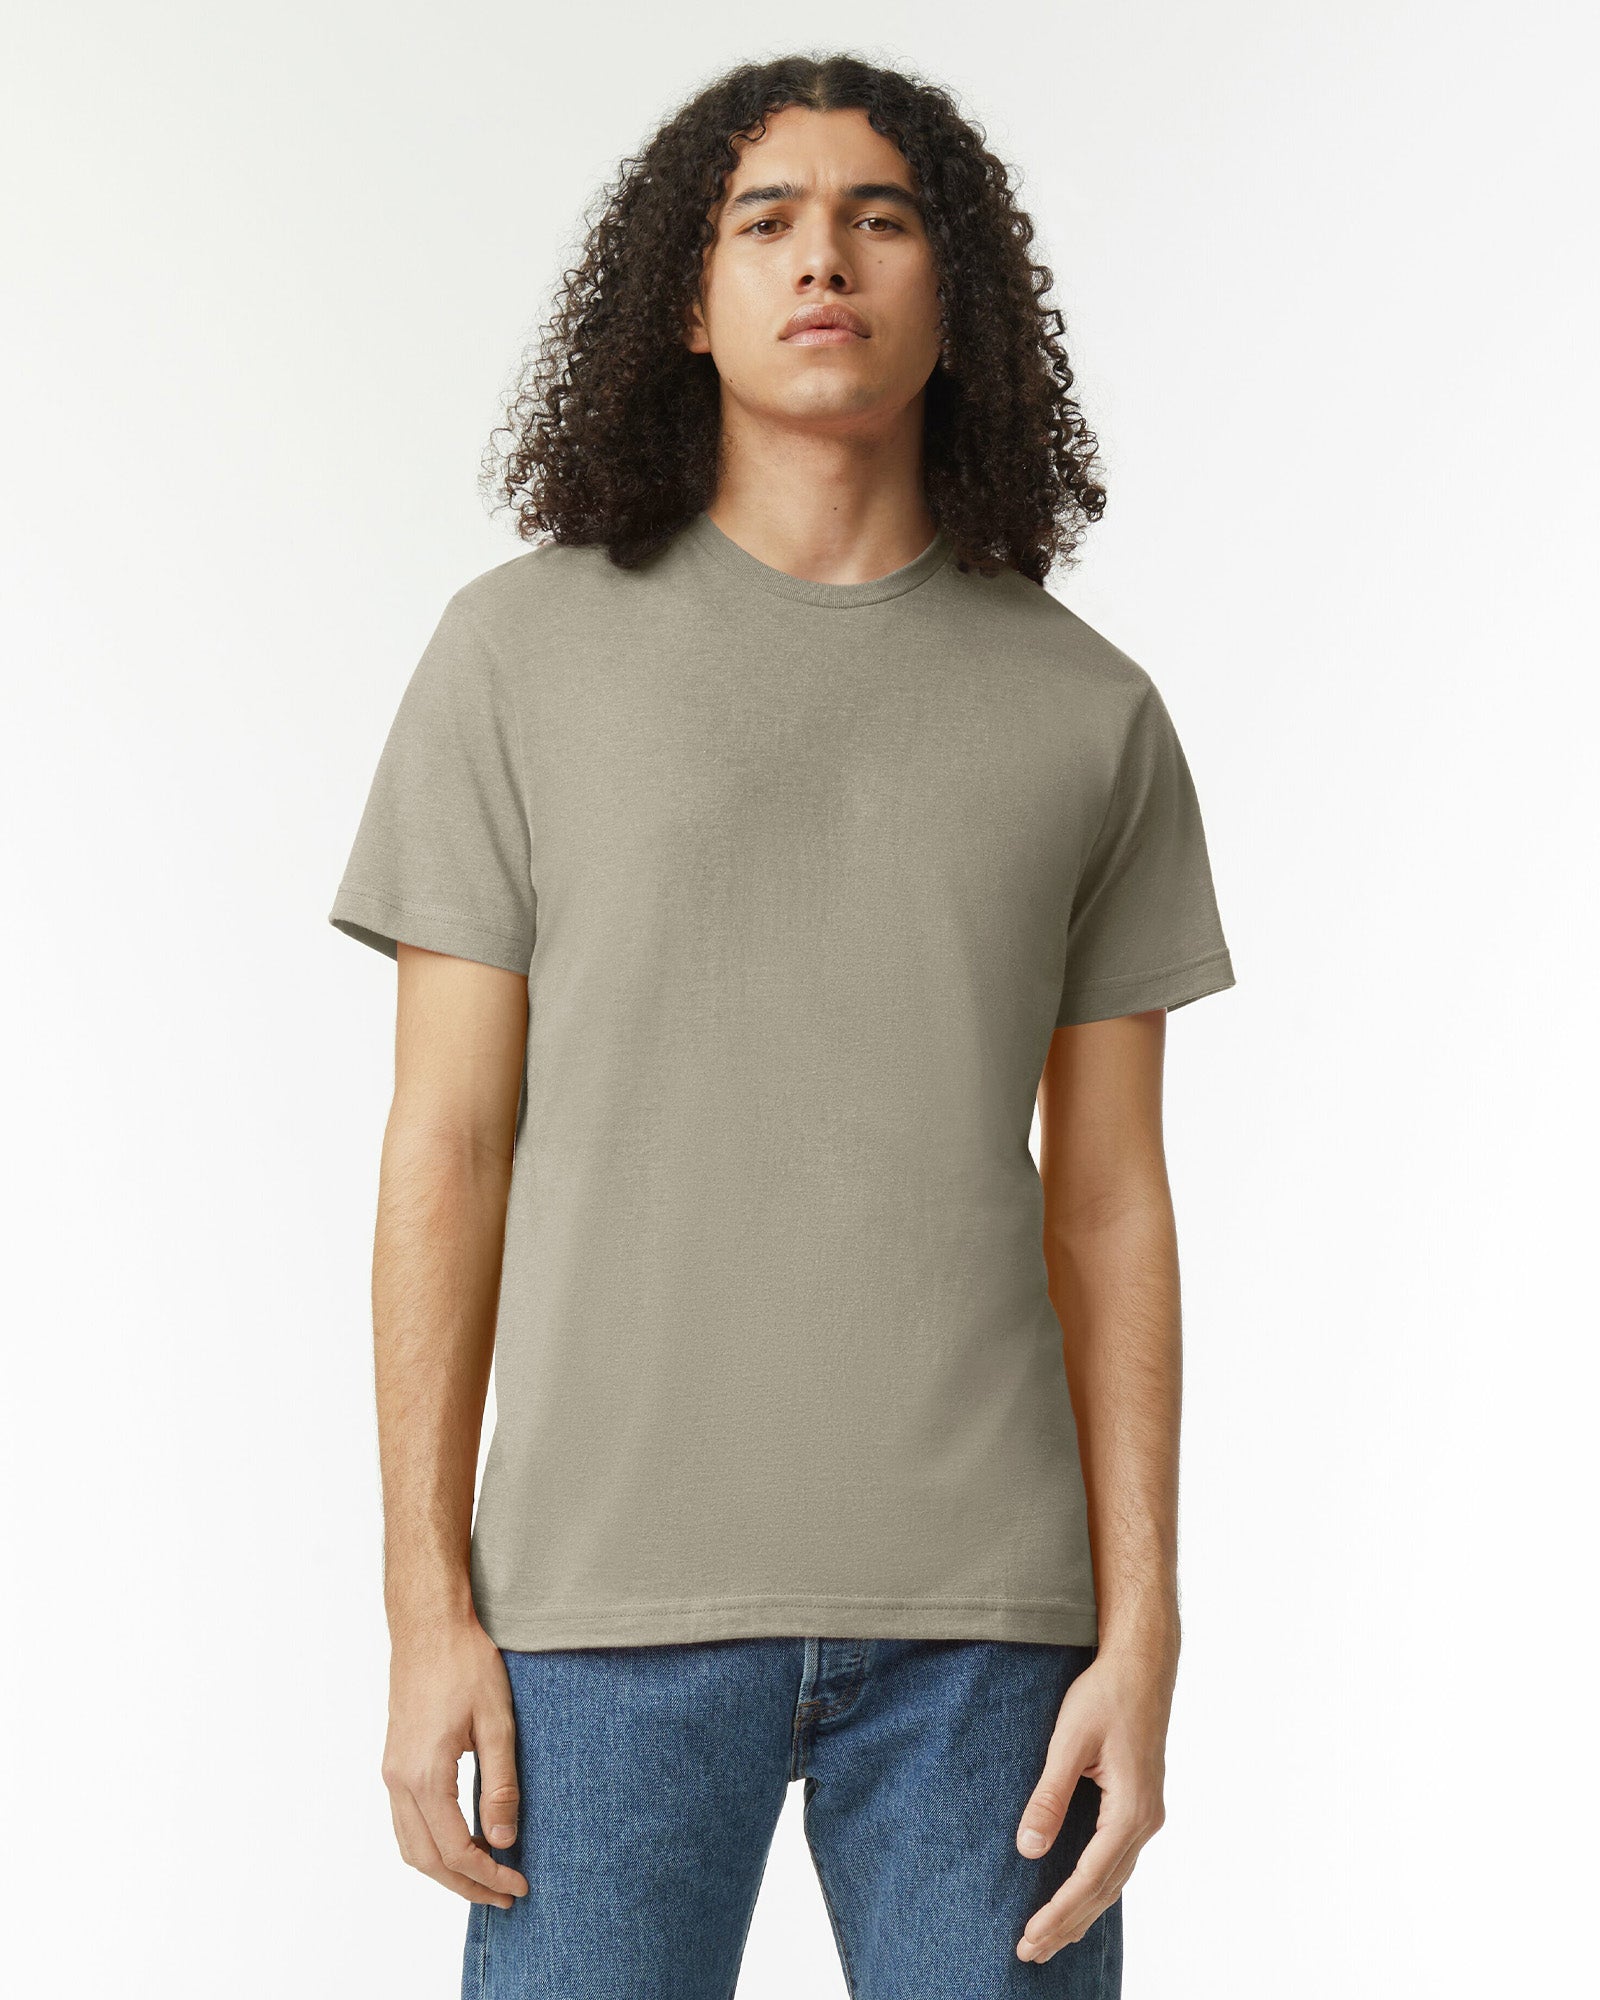 CVC Unisex Short Sleeve T-Shirt - Heather Khaki